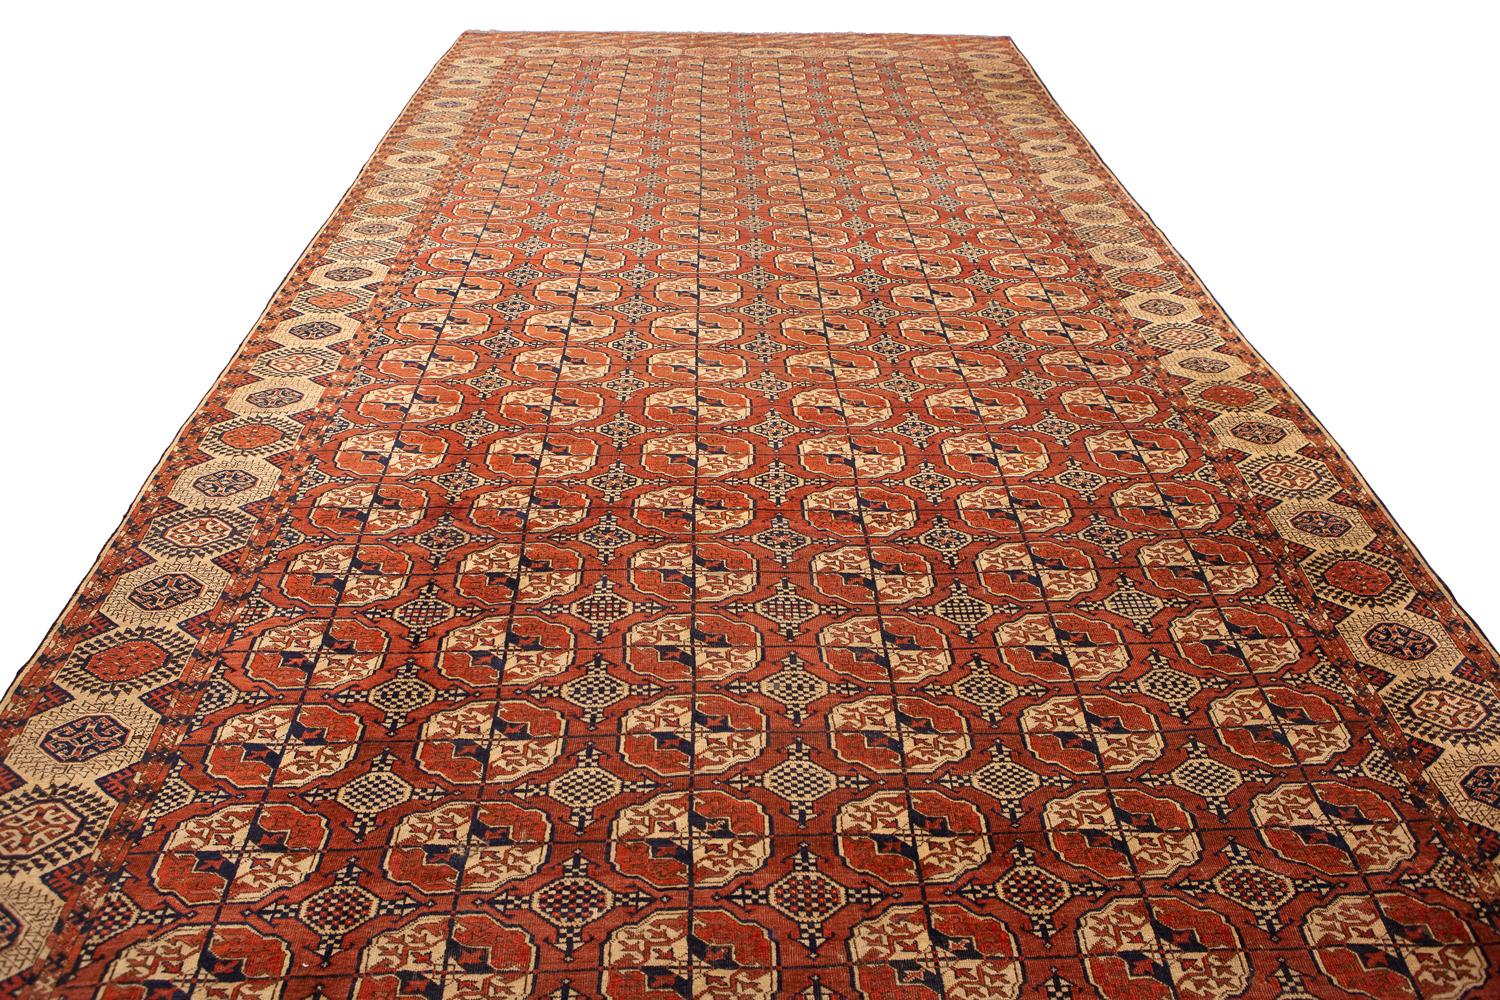 Dies ist ein einzigartiger antiker Buchara-Teppich mit einem geometrischen Muster und Wollflor. Die filigranen Details und satten Farben machen diesen Teppich zu einem wahren Kunstwerk. Er ist nicht nur wunderschön anzuschauen, sondern auch